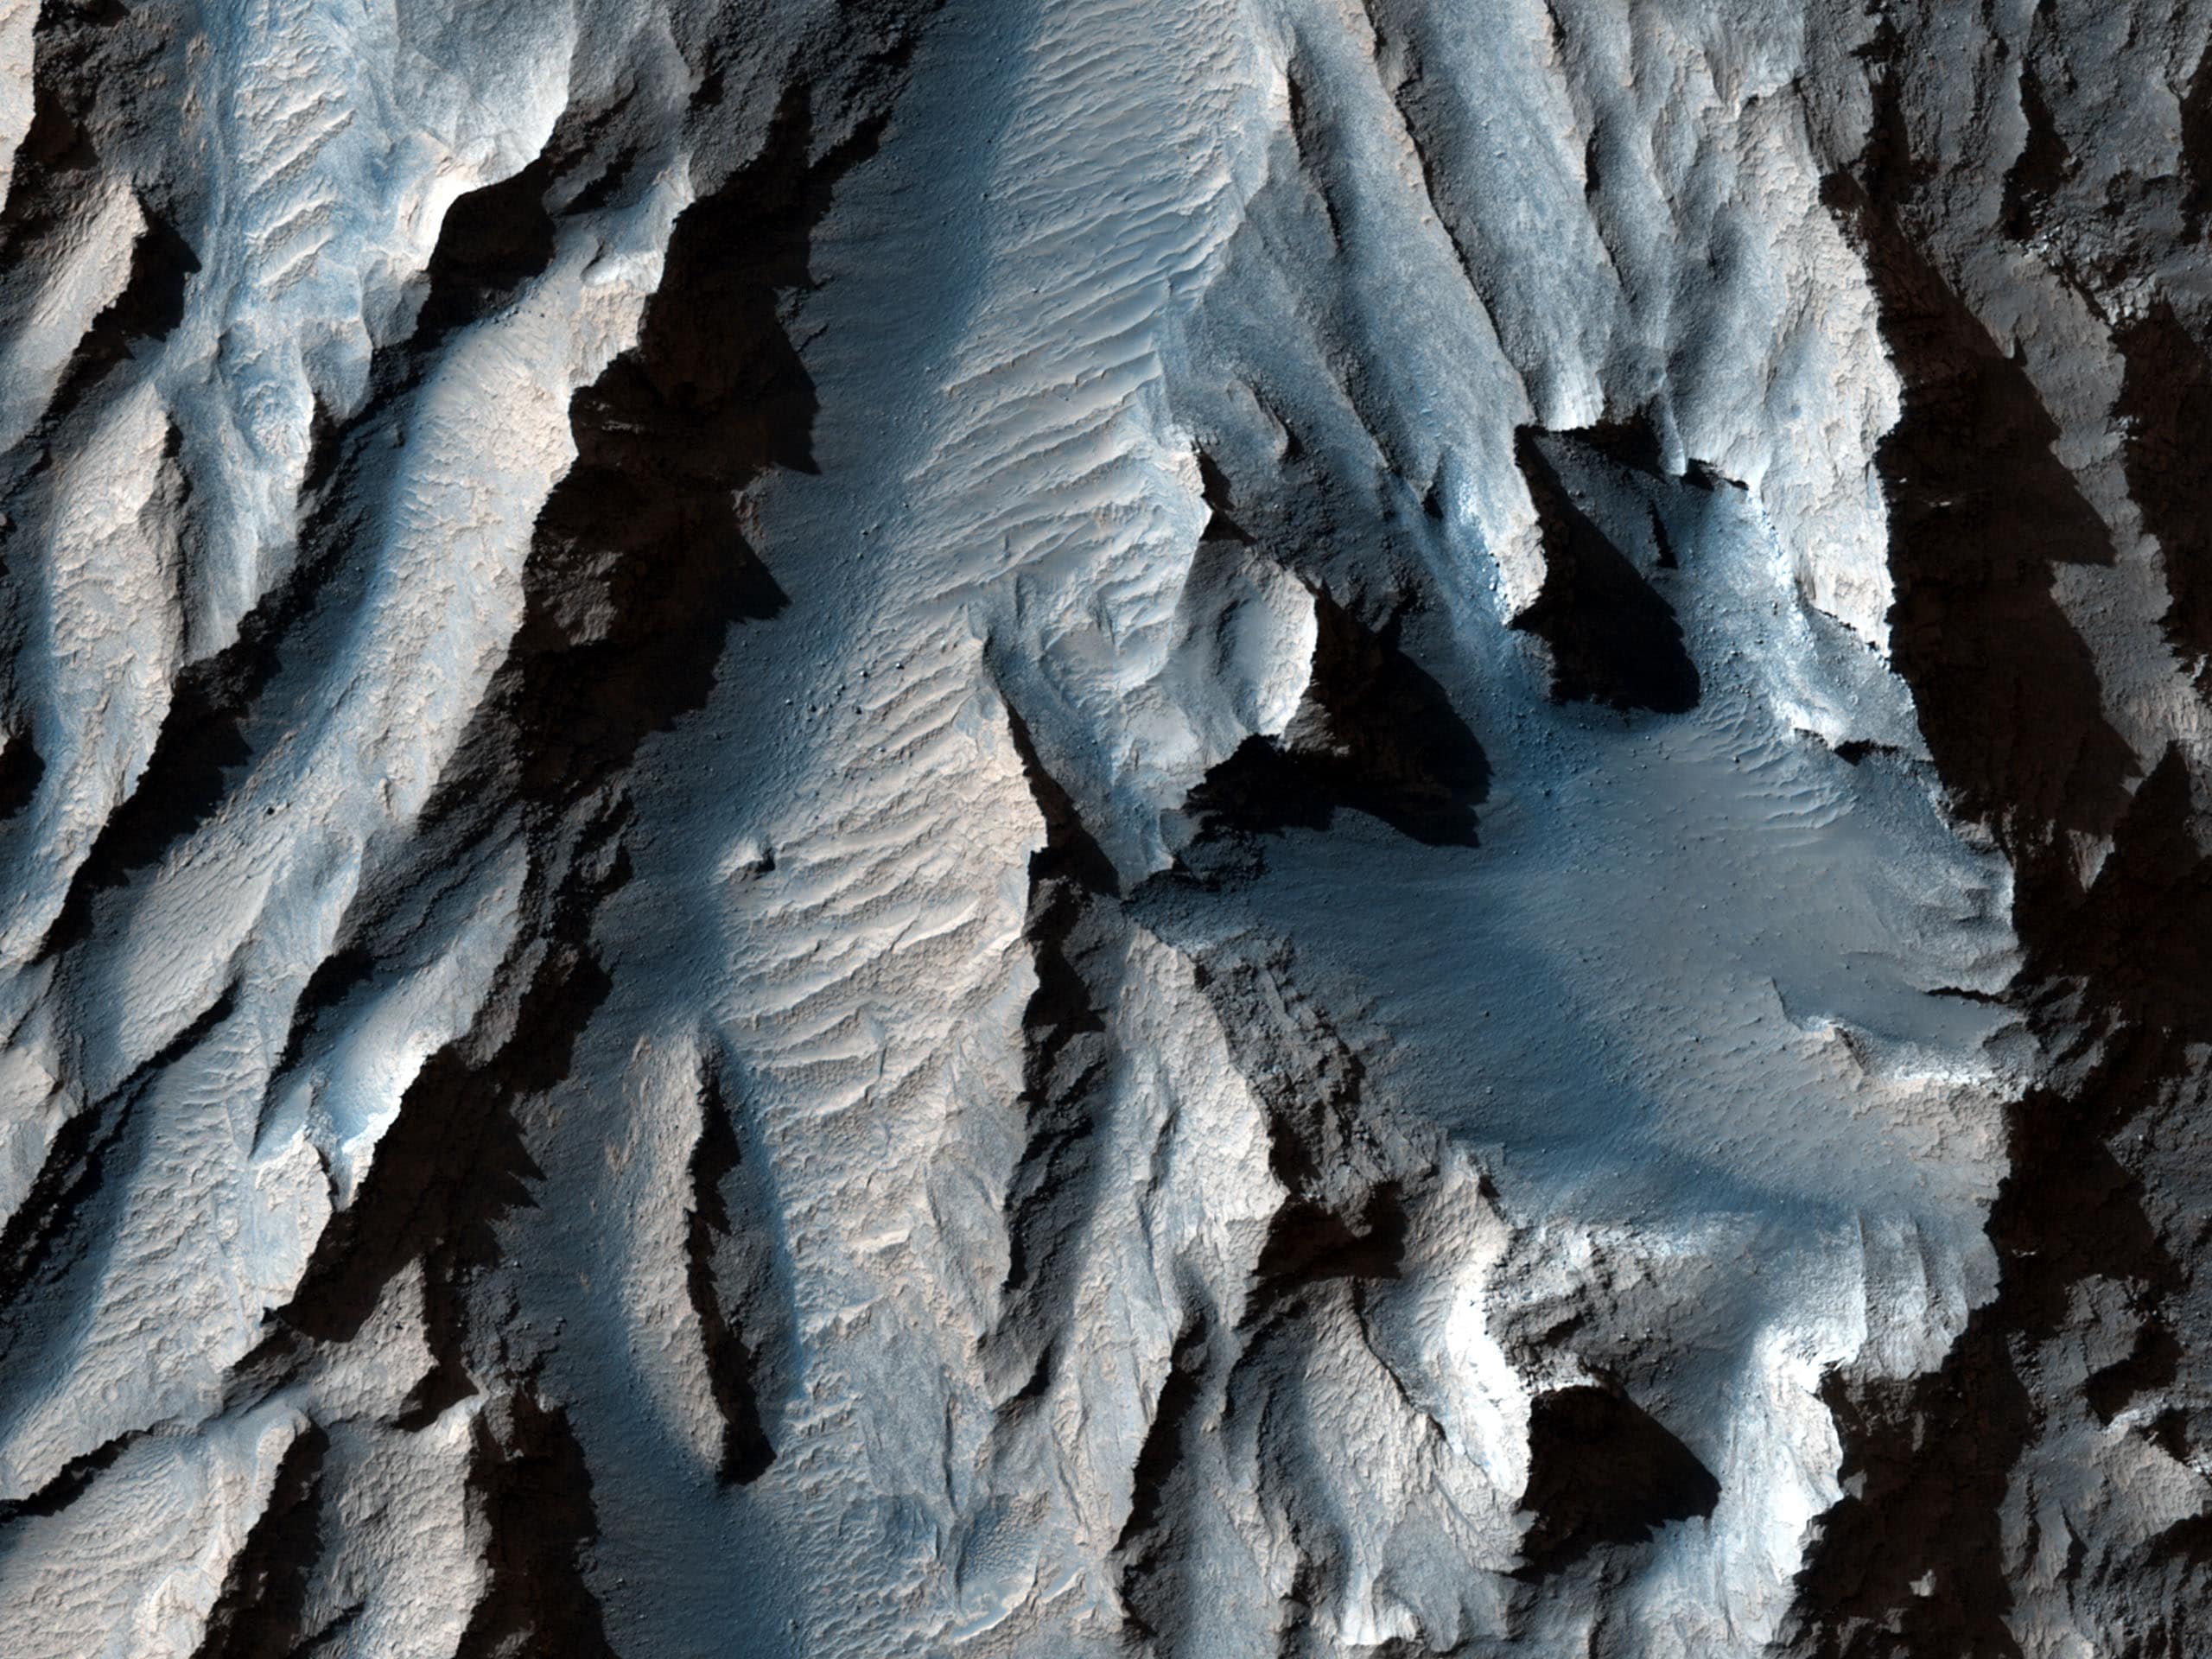 Camera quỹ đạo HiRISE của NASA đã chụp ảnh cận cảnh bề mặt Sao Hoả